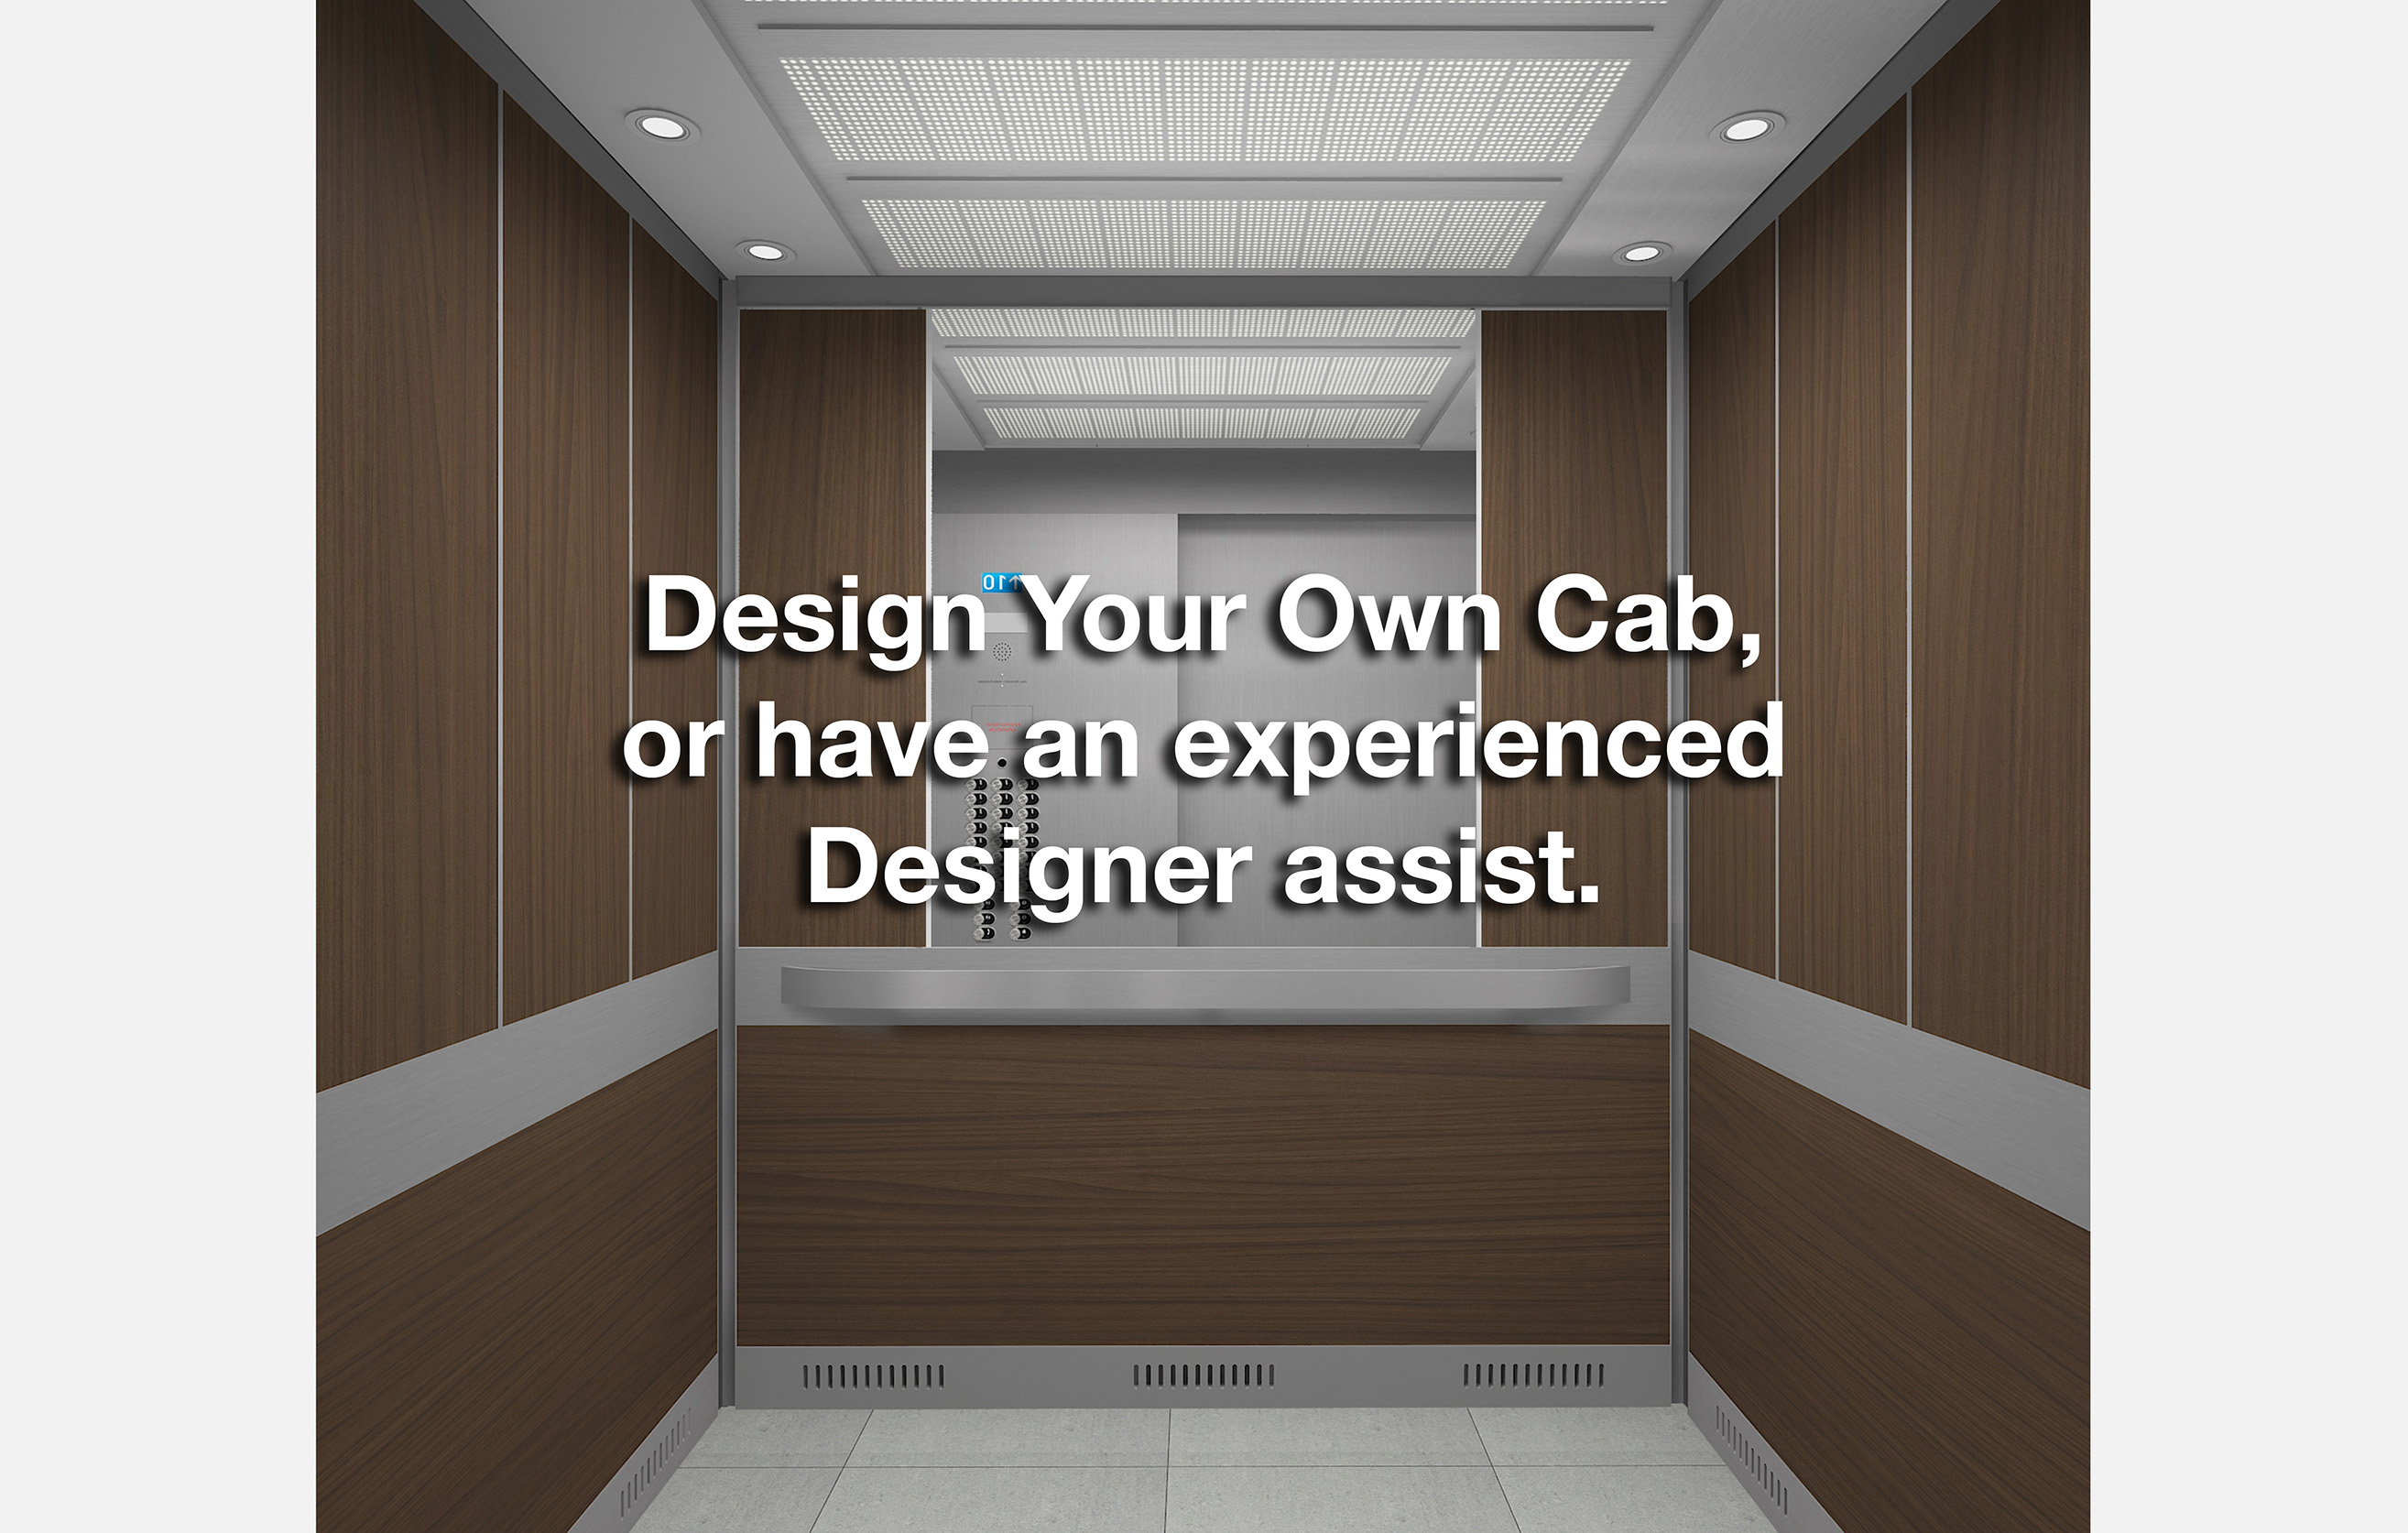 Design Your Own Cab